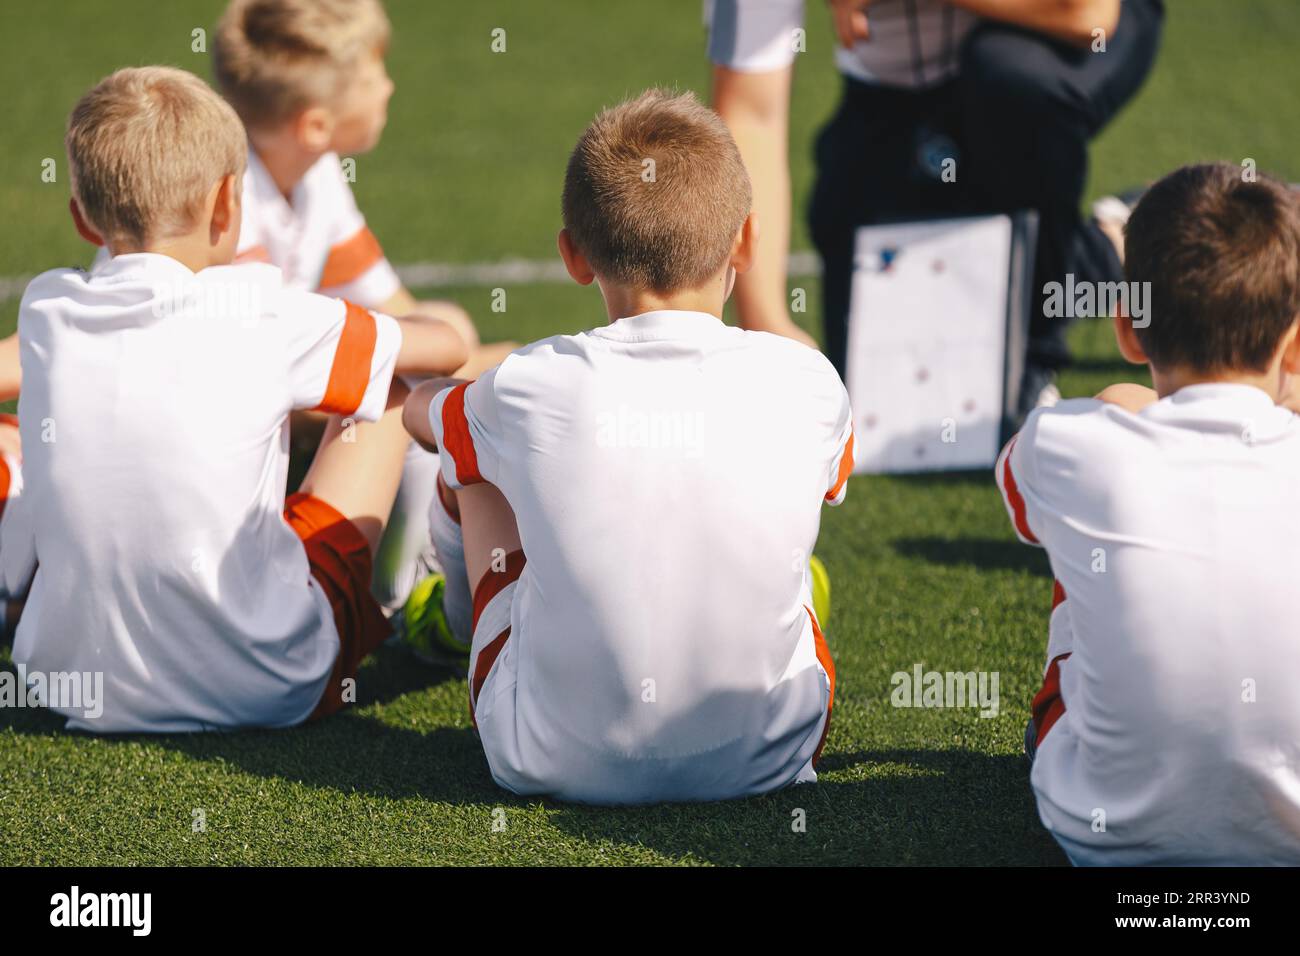 Enfants garçons sur l'entraînement de football avec un entraîneur. Le formateur explique les tactiques à l'aide du tableau blanc stratégique. Garçons écoutant l'entraîneur à la pratique de football Banque D'Images